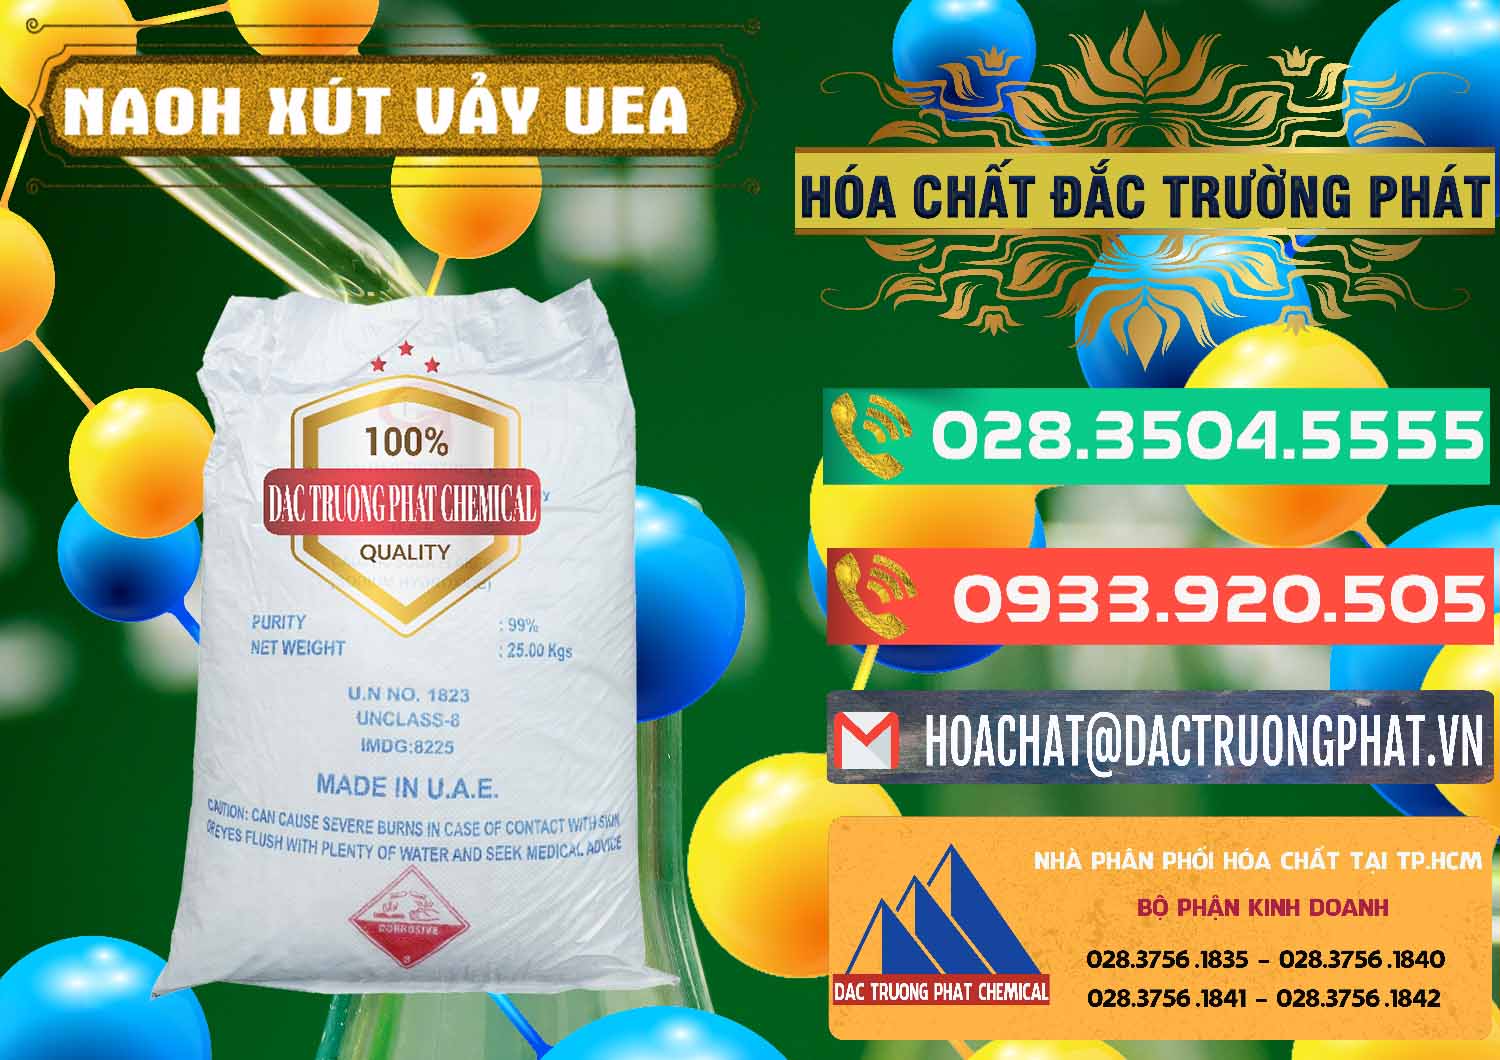 Đơn vị chuyên nhập khẩu & bán Xút Vảy - NaOH Vảy UAE Iran - 0432 - Nơi bán - phân phối hóa chất tại TP.HCM - congtyhoachat.com.vn